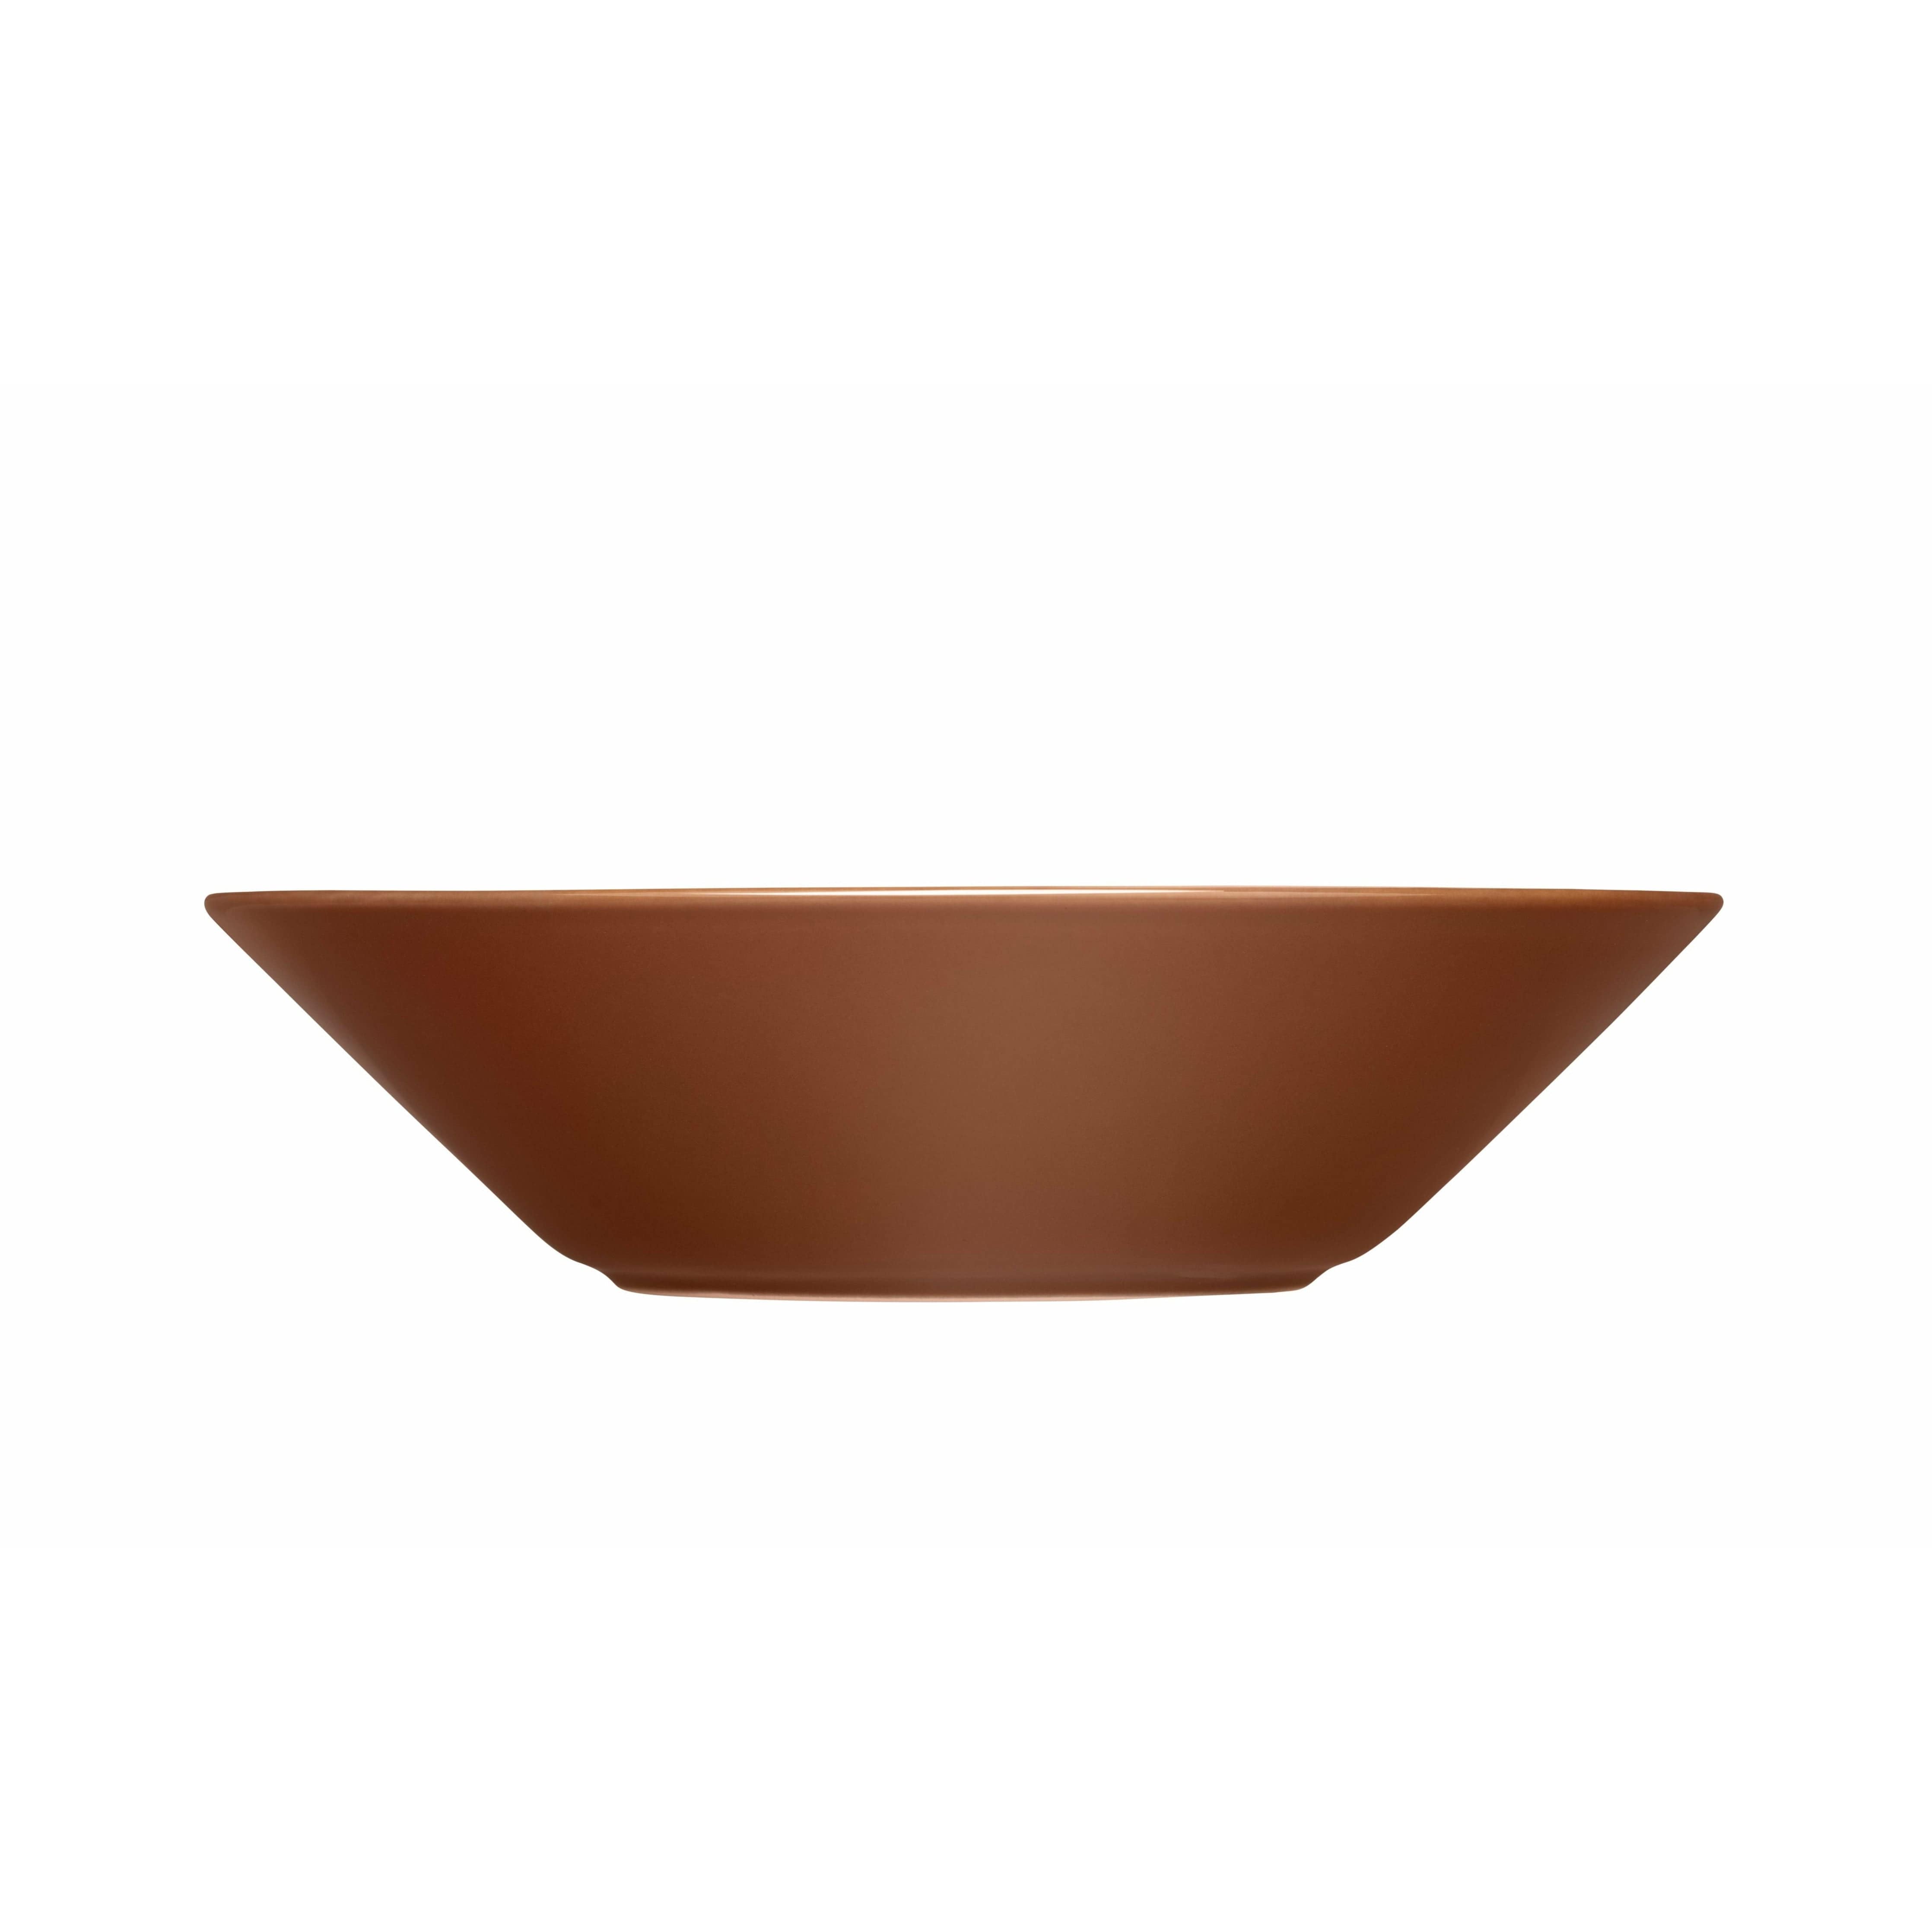 Iittala Teema Deep Plate 21cm, Vintage Brown